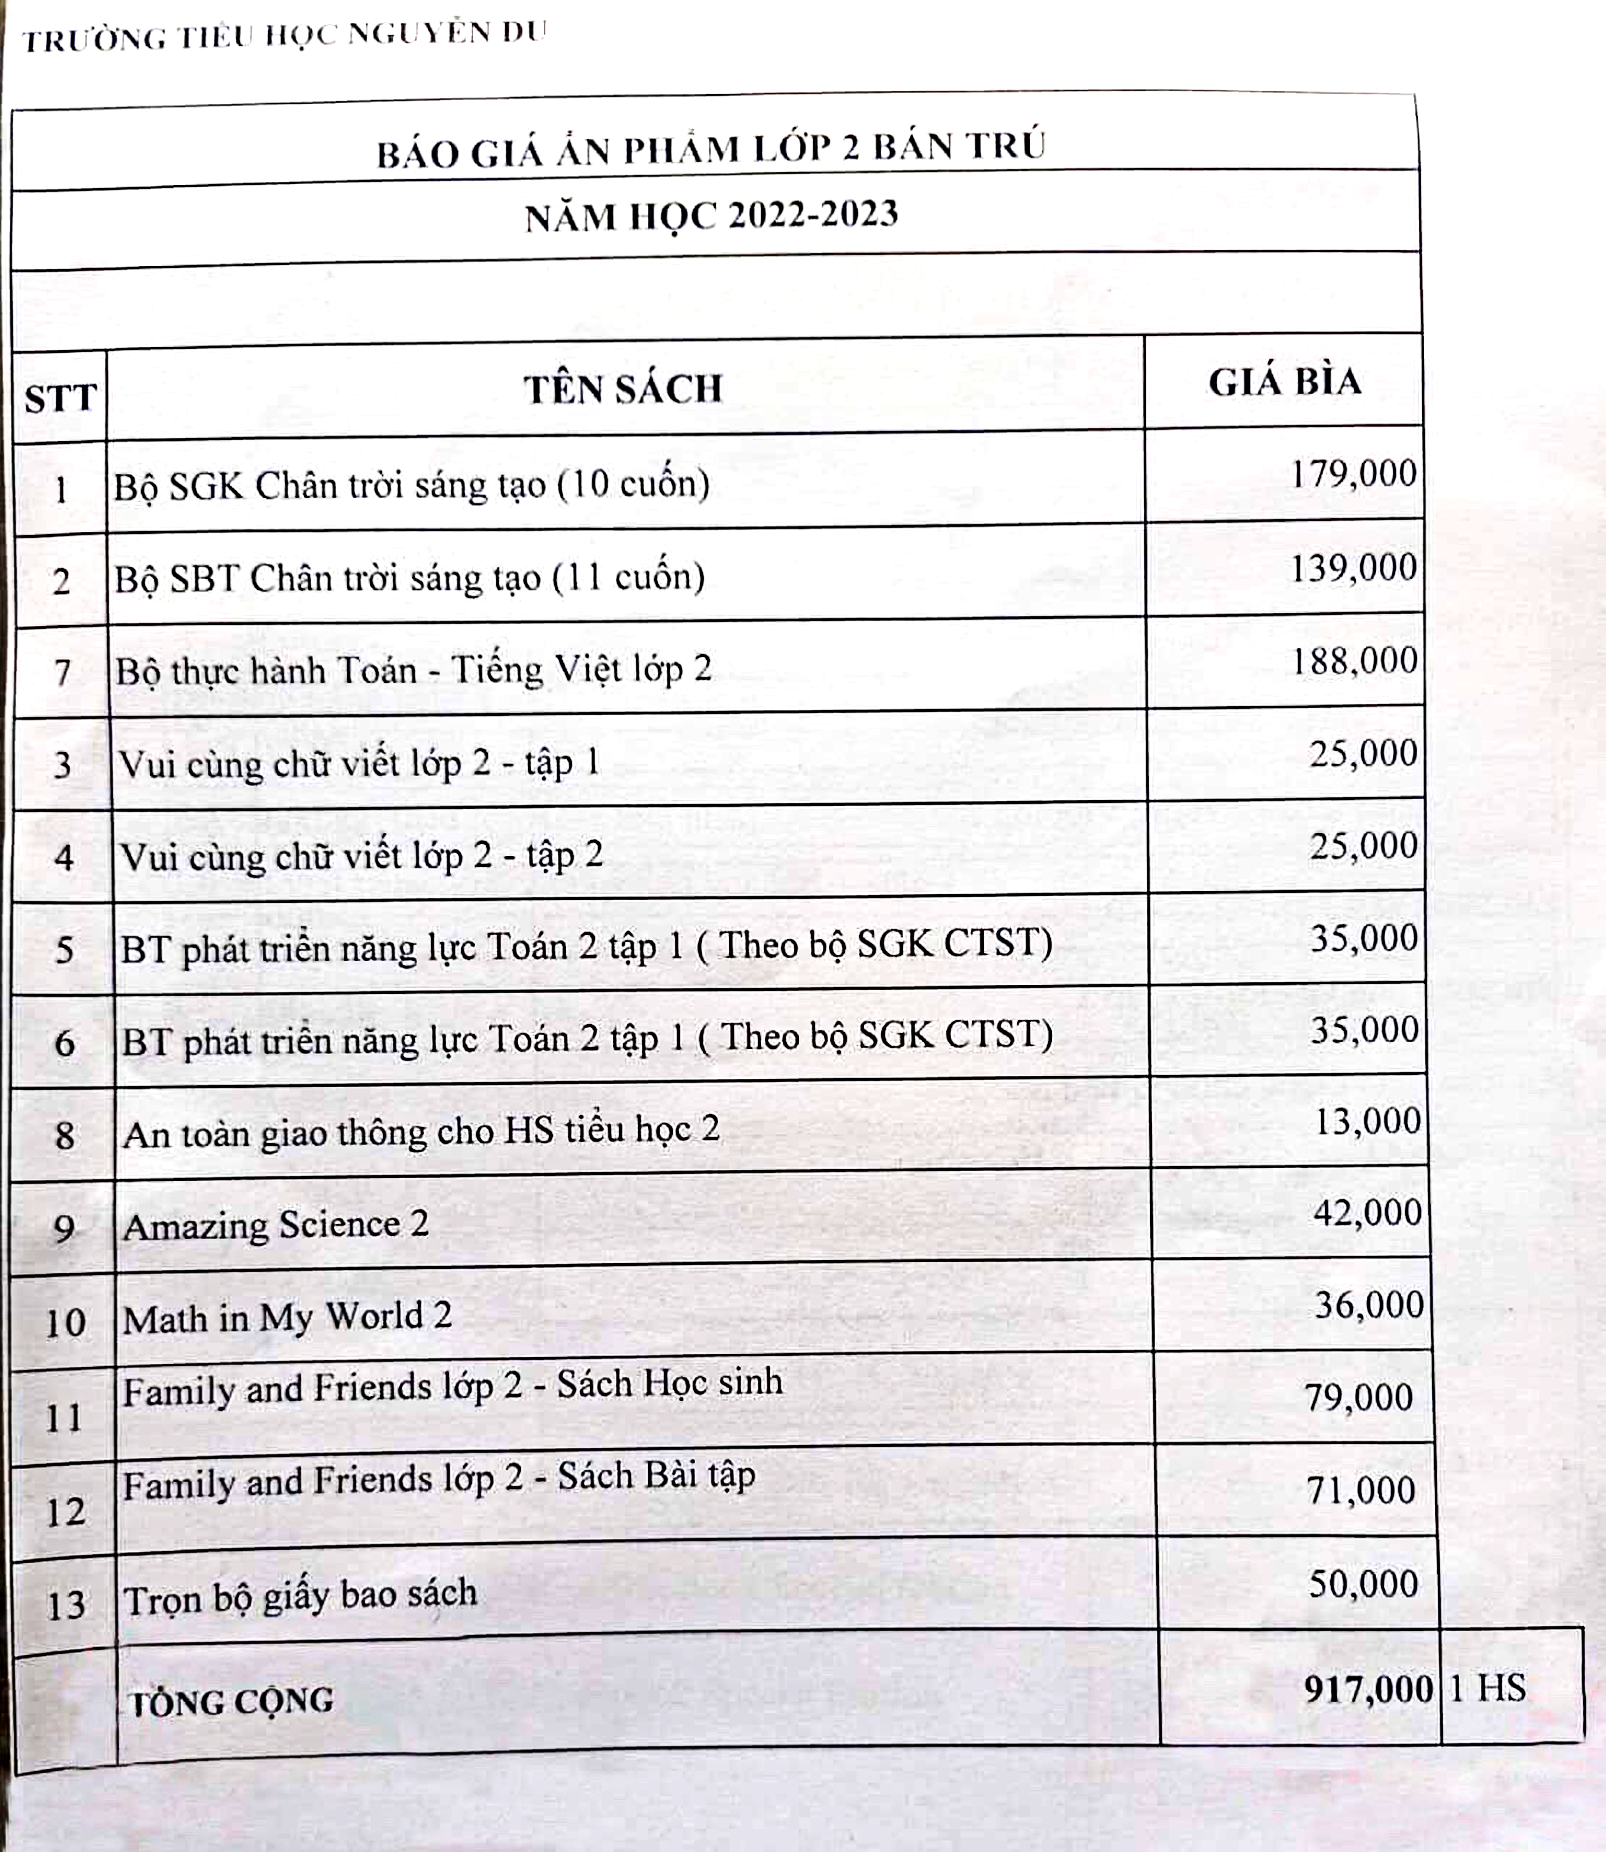 Bộ sách giáo khoa và tài liệu tham khảo lớp Hai năm học 2022 - 2023  của Trường tiểu học Nguyễn Du (Q.12) có giá 917.000 đồng